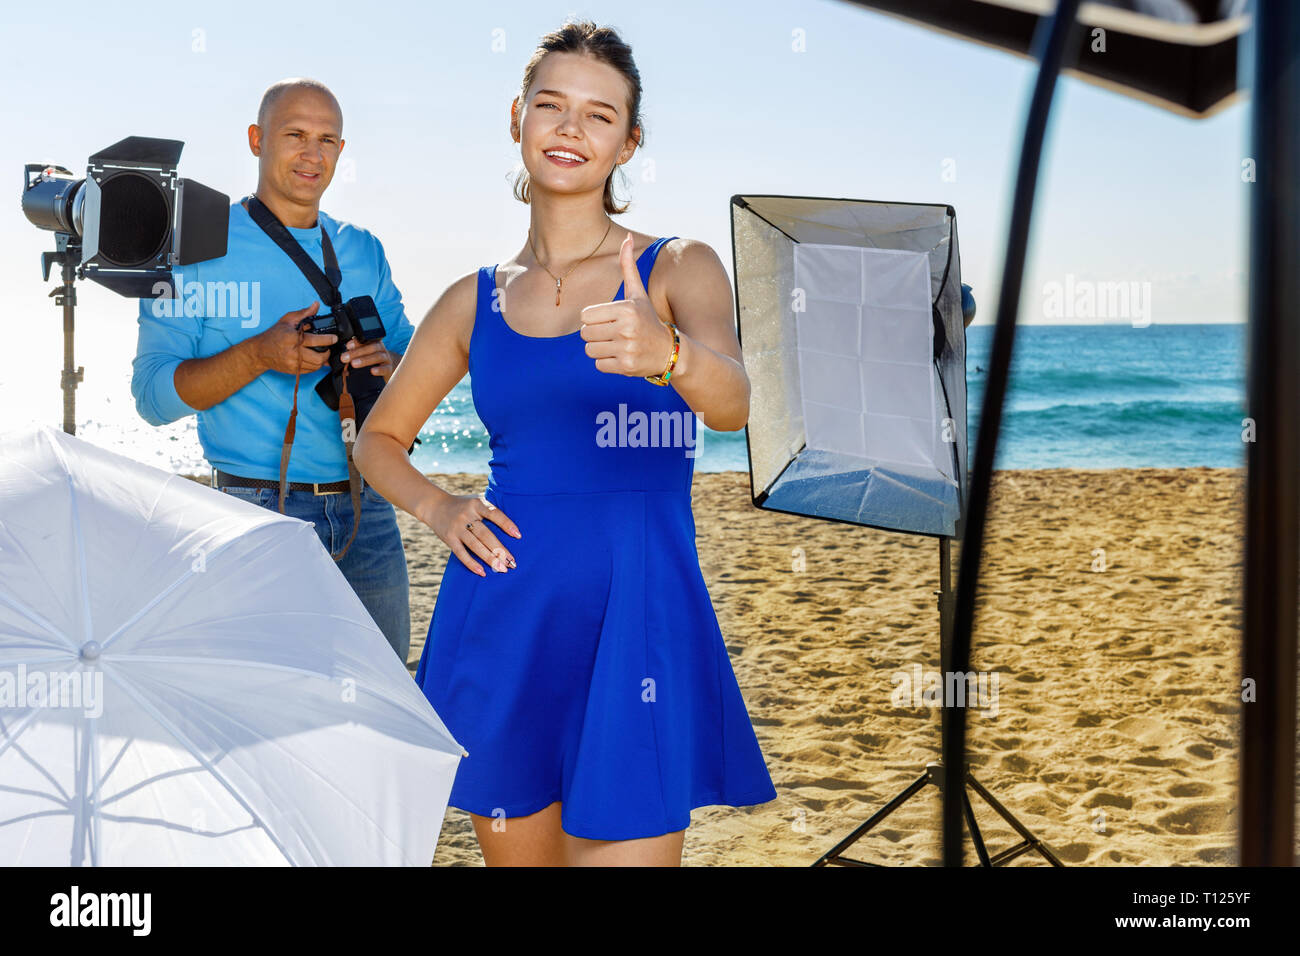 Giovani allegro sorriso positivo attraente modello femminile deliziati con foto professionali le riprese il mare con il fotografo maschio Foto Stock